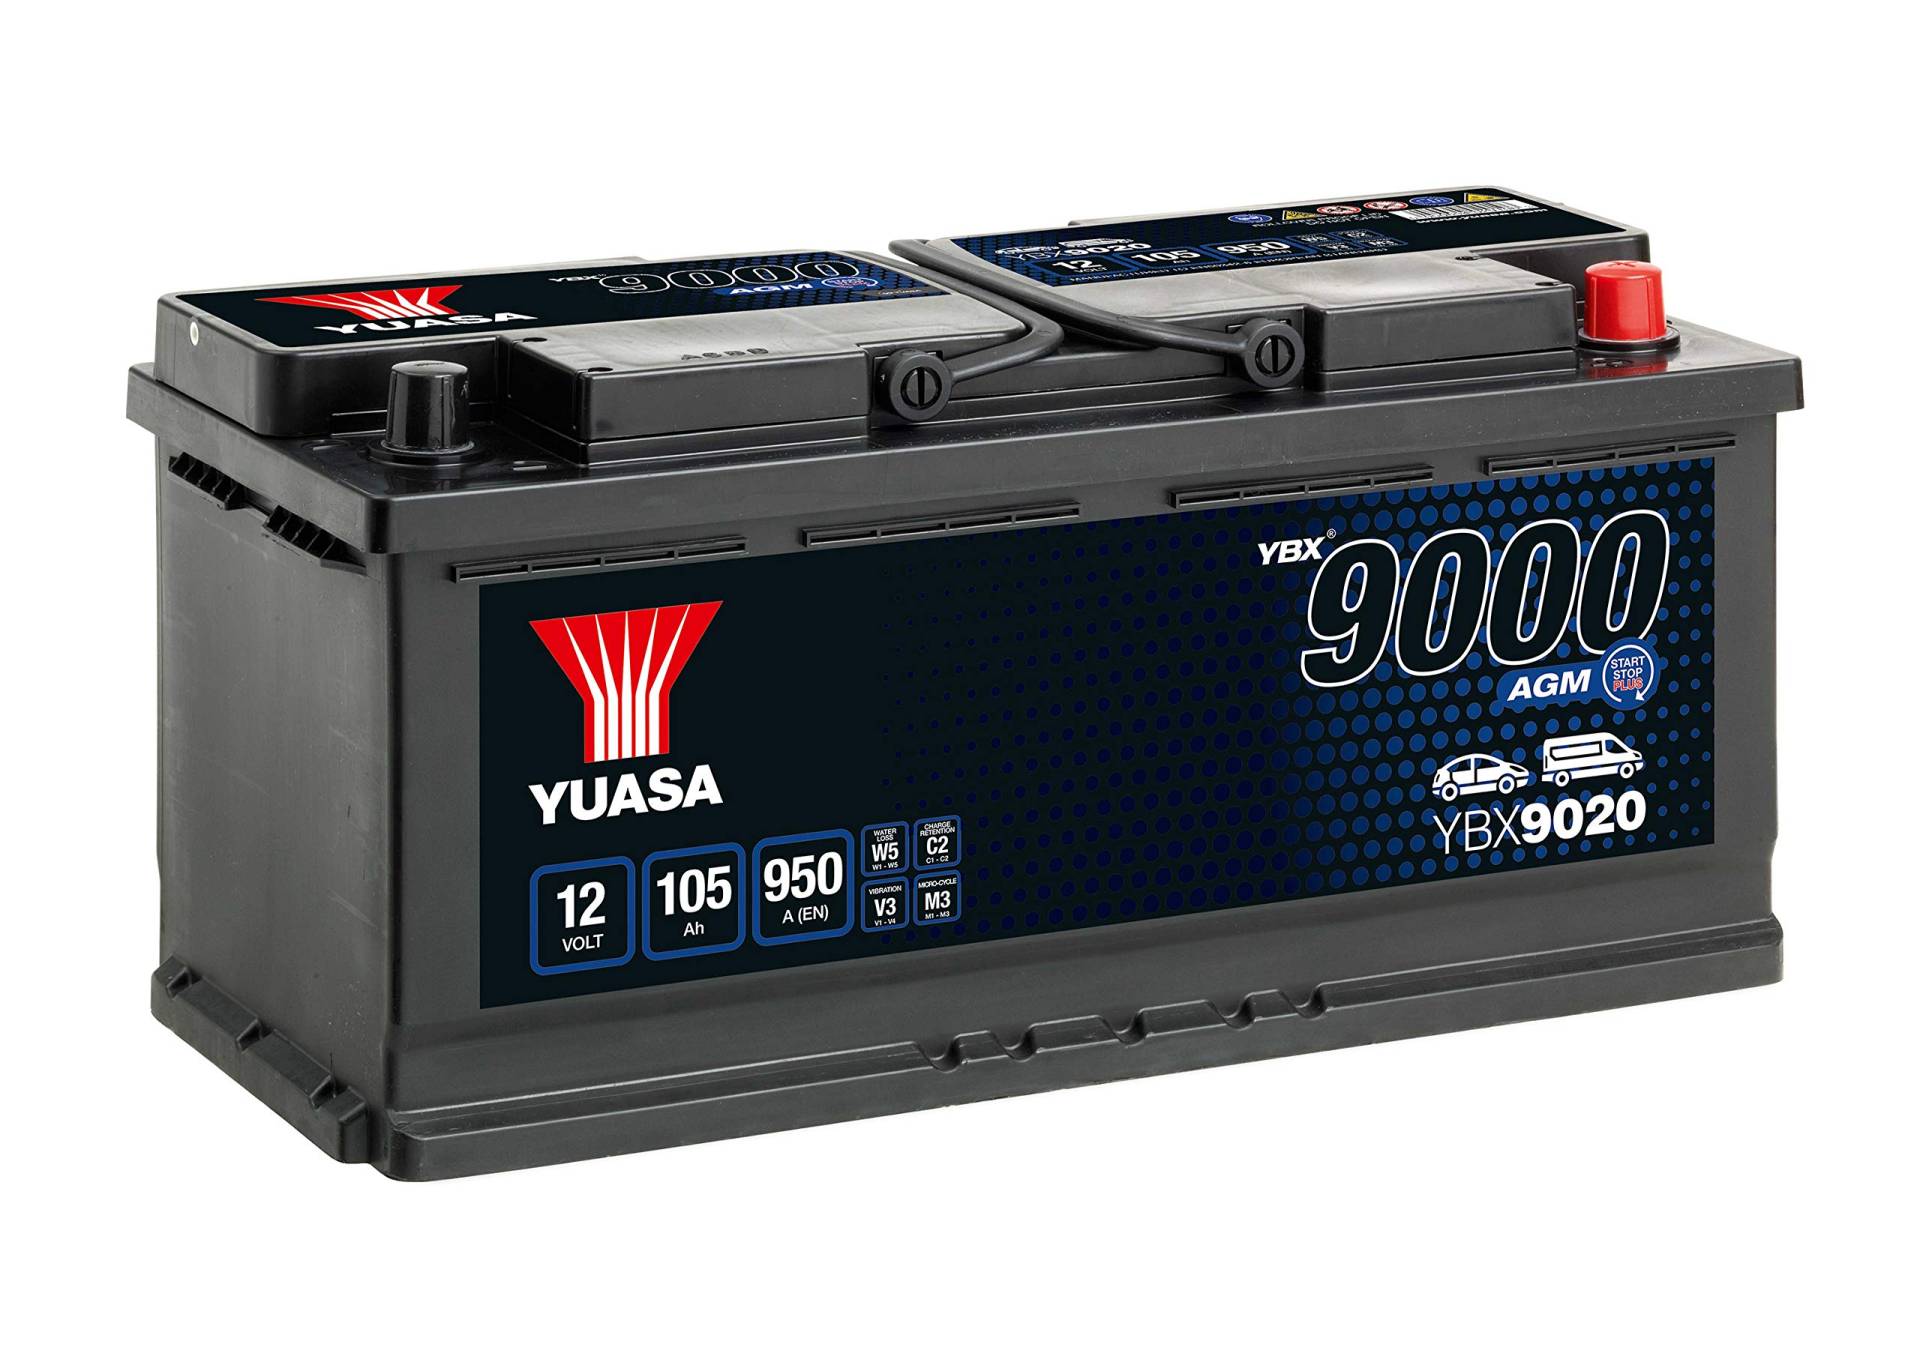 YUASA ybx9020 AGM Akku Start Stop Plus, 12 V/105 AH/950 A von Yuasa